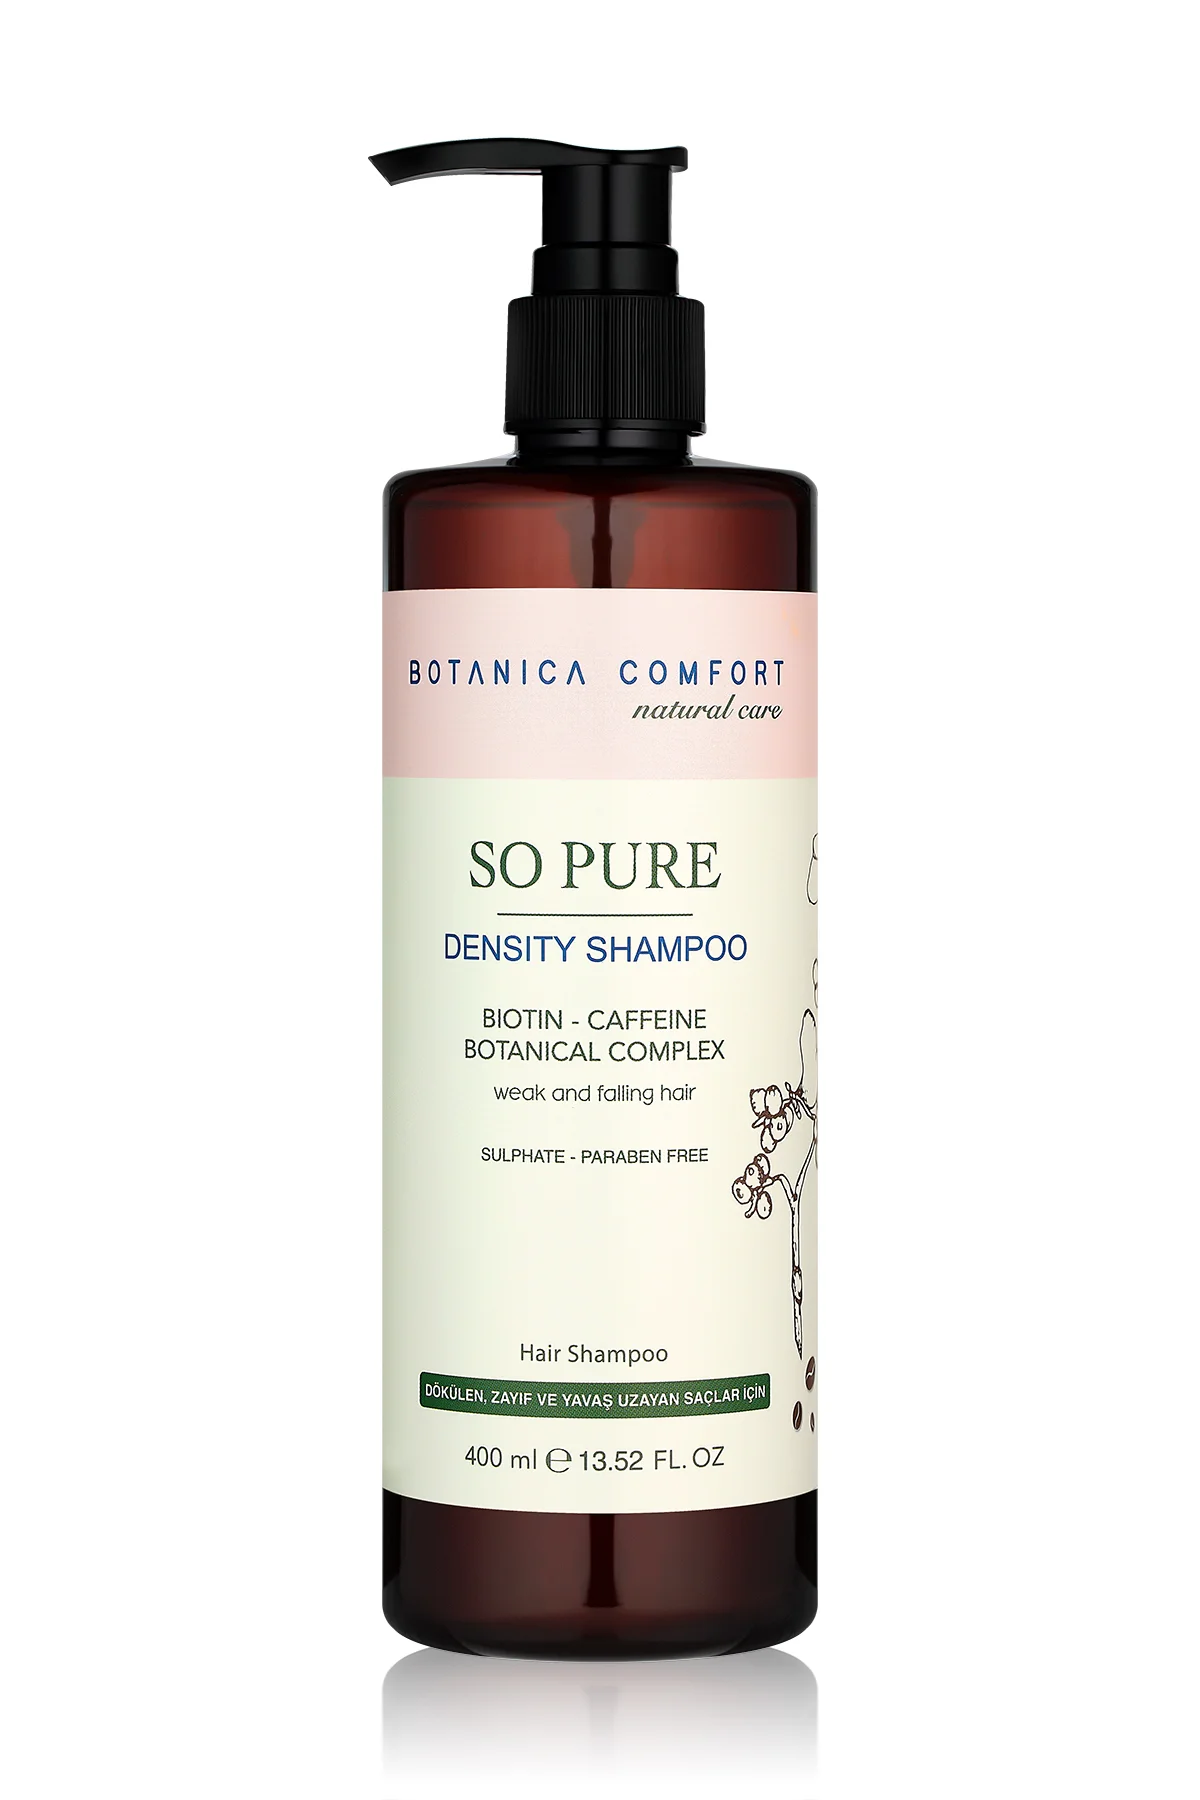 Botanica Comfort Hacim Verici ve Dökülme Önleyici Şampuan 400 ml